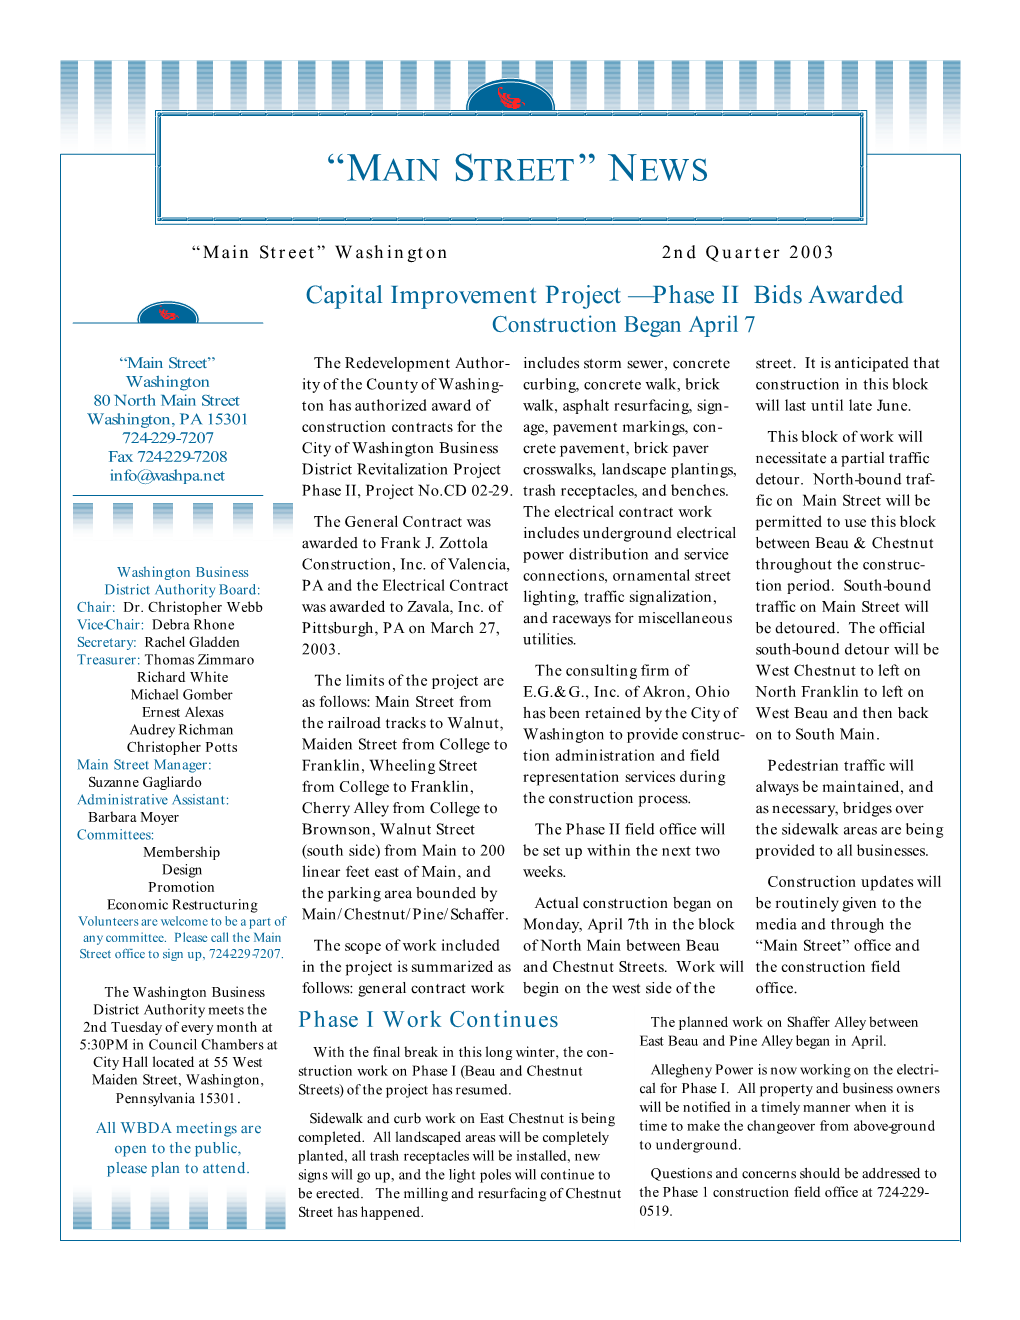 2Nd Quarter 2003 "Main Street" News